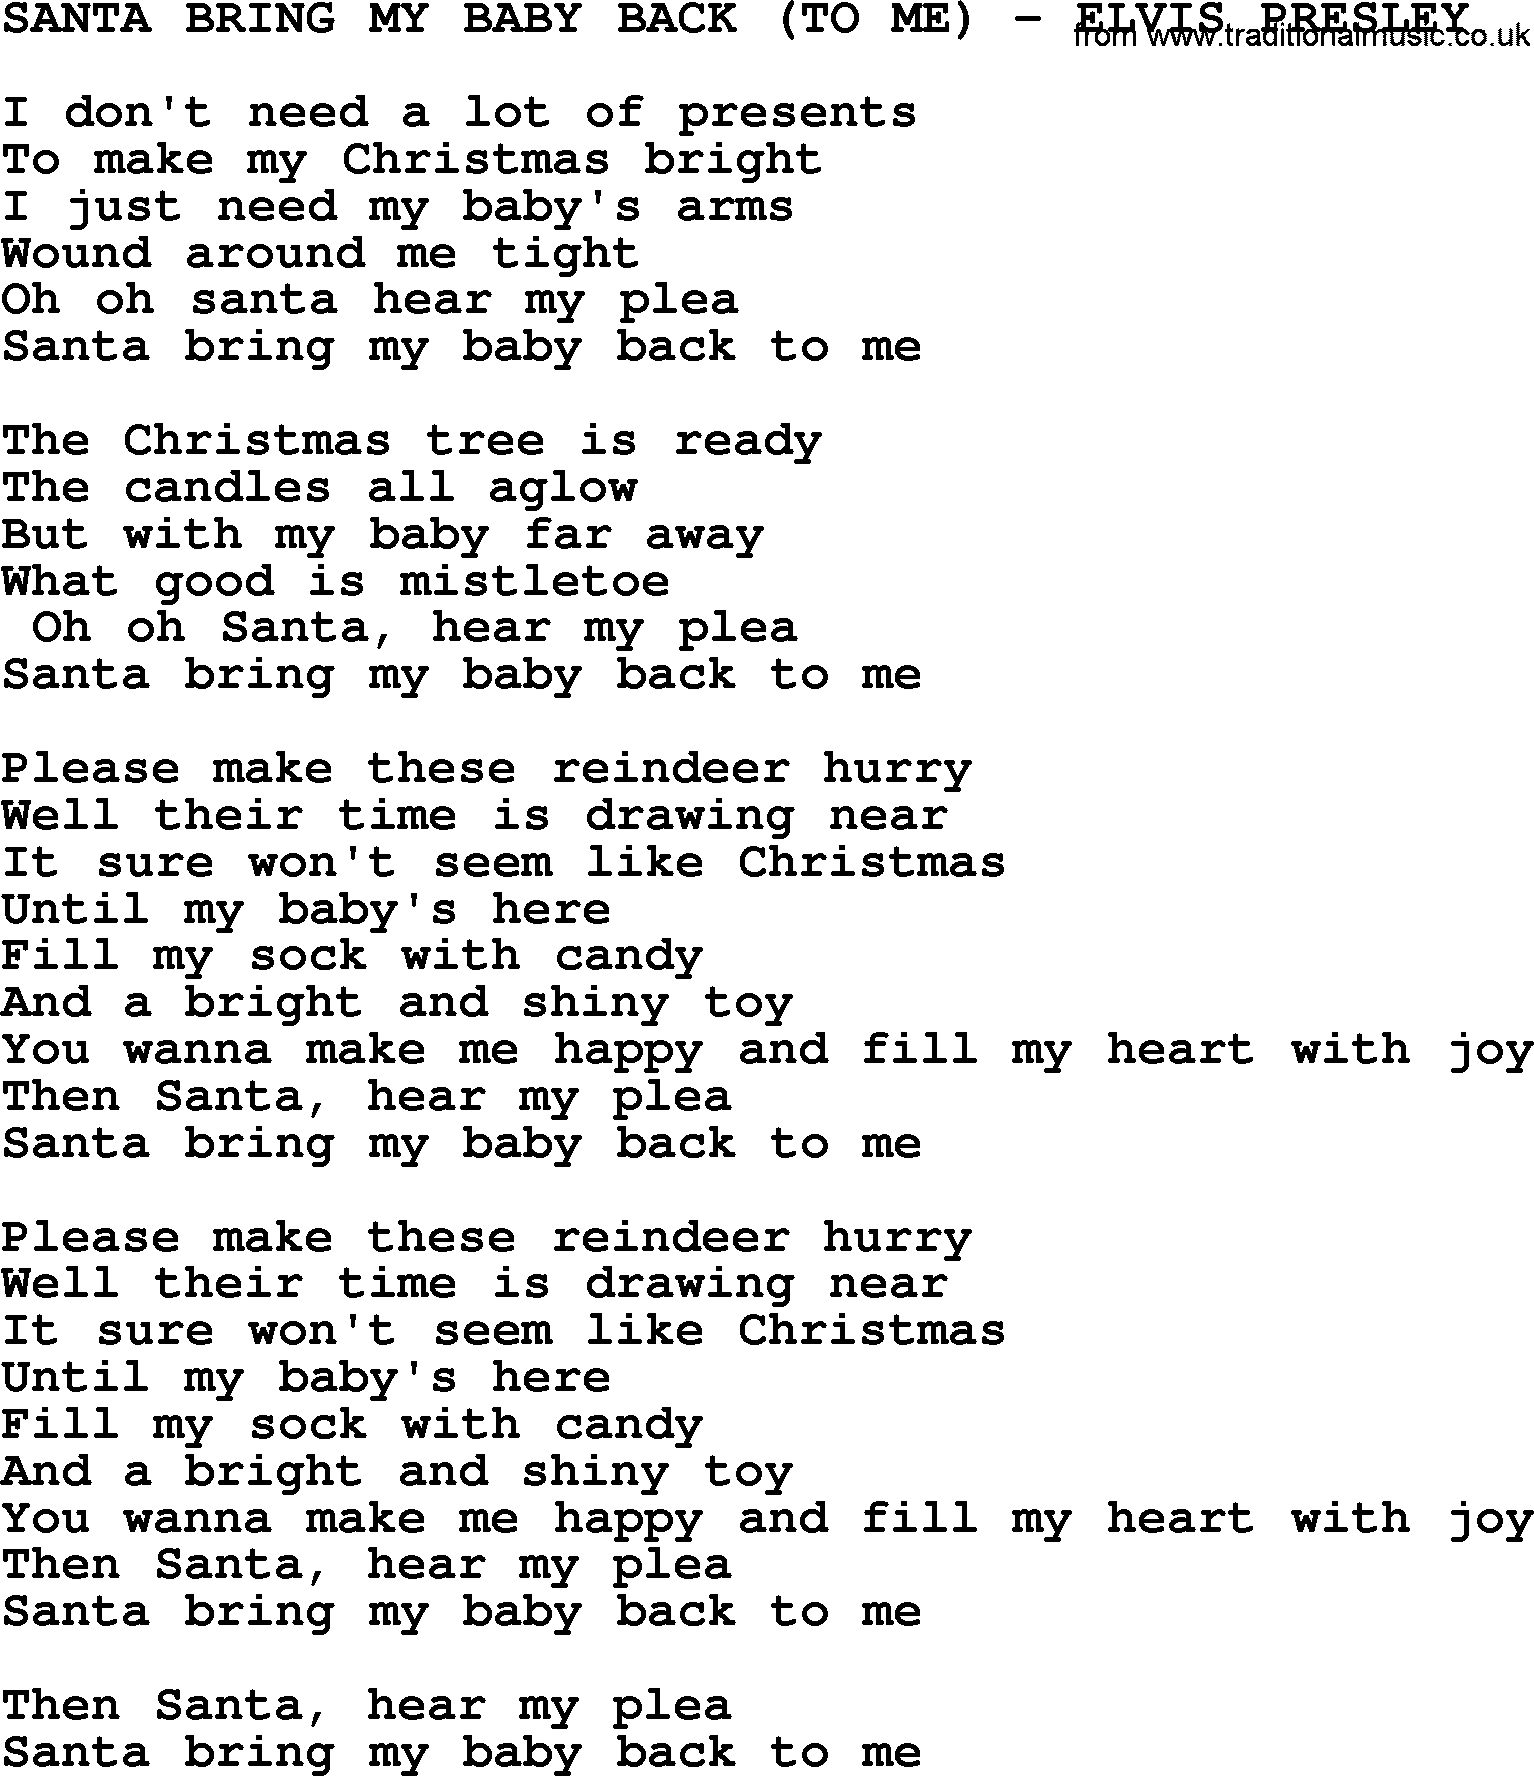 Elvis Presley song: Santa Bring My Baby Back (To Me)-Elvis Presley-.txt lyrics and chords